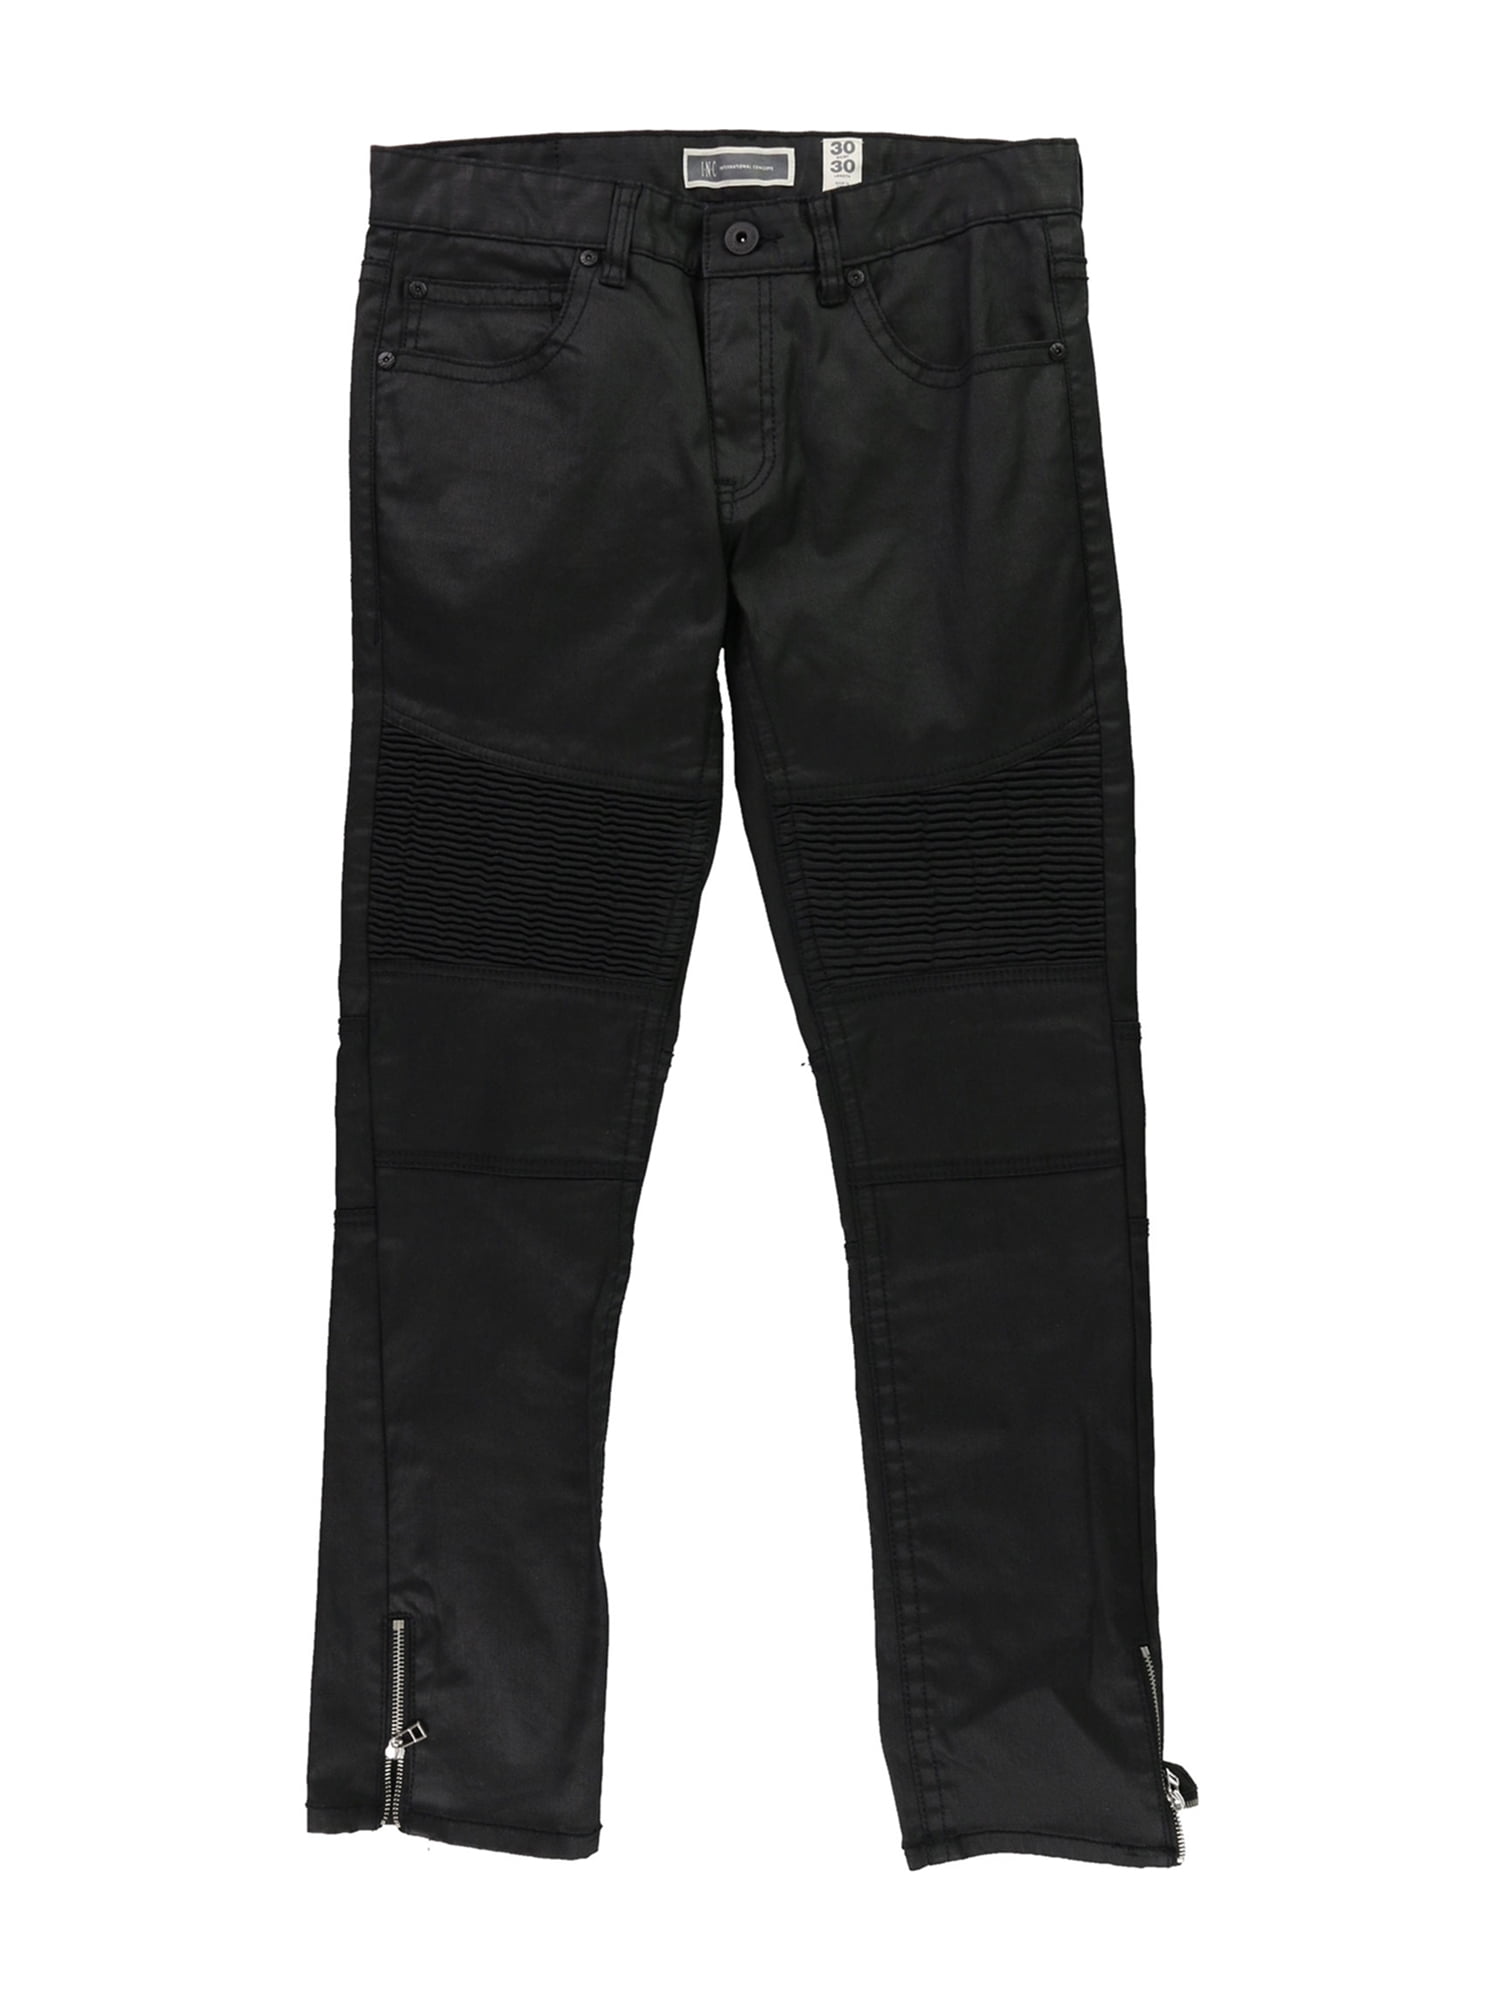 I-N-C Mens Matrix Skinny Fit Jeans black 30x30 | Walmart Canada